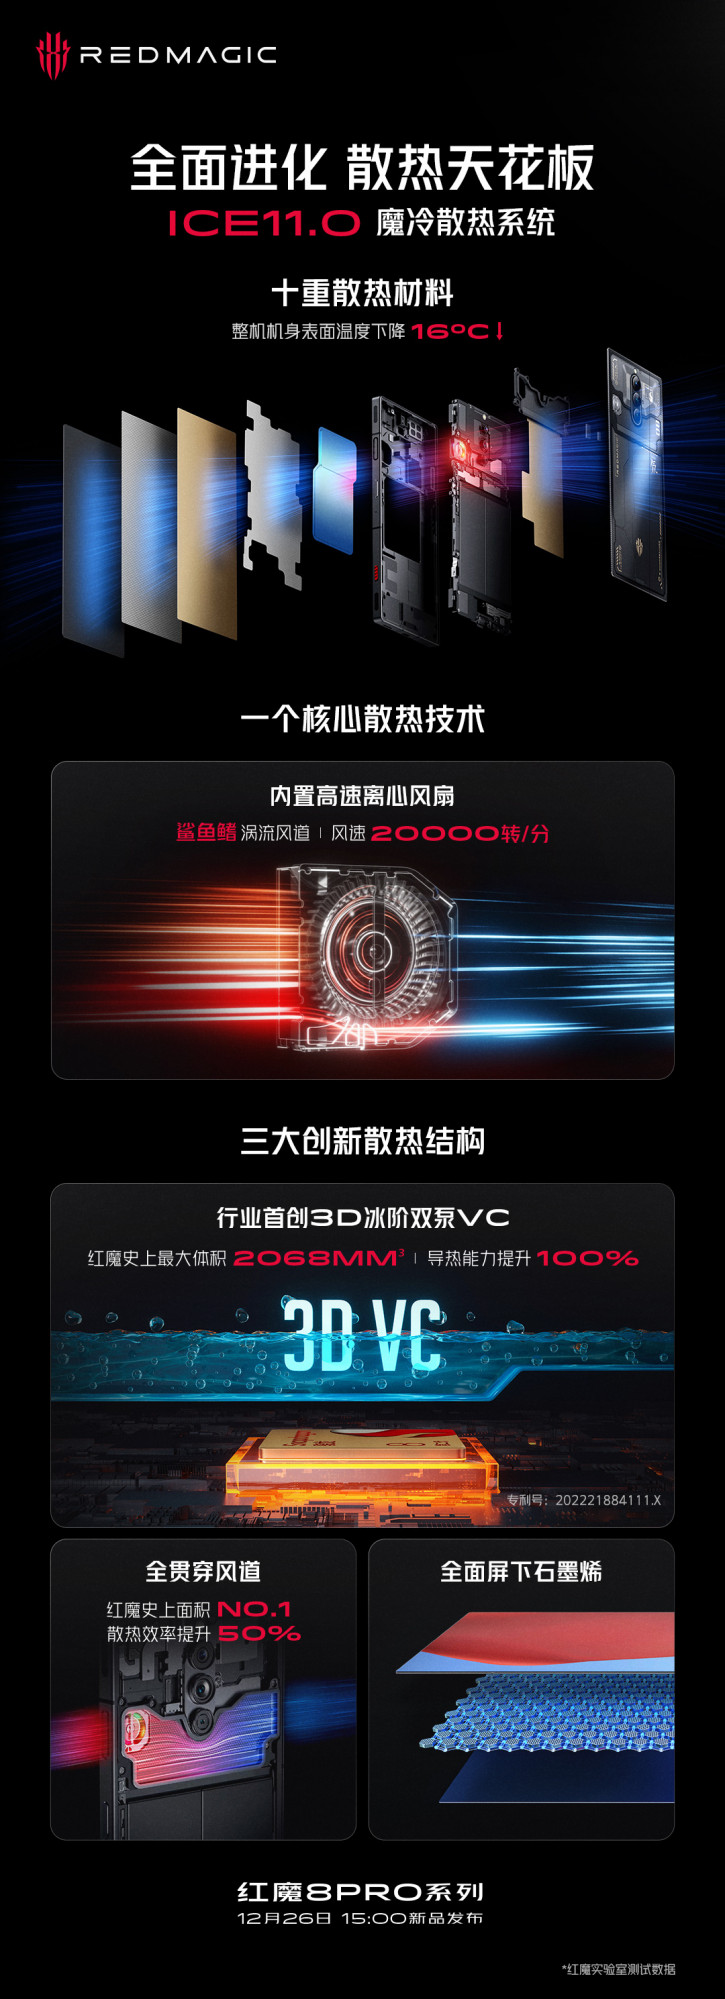 Red Magic 8 Pro  OnePlus 11  AnTuTu-  